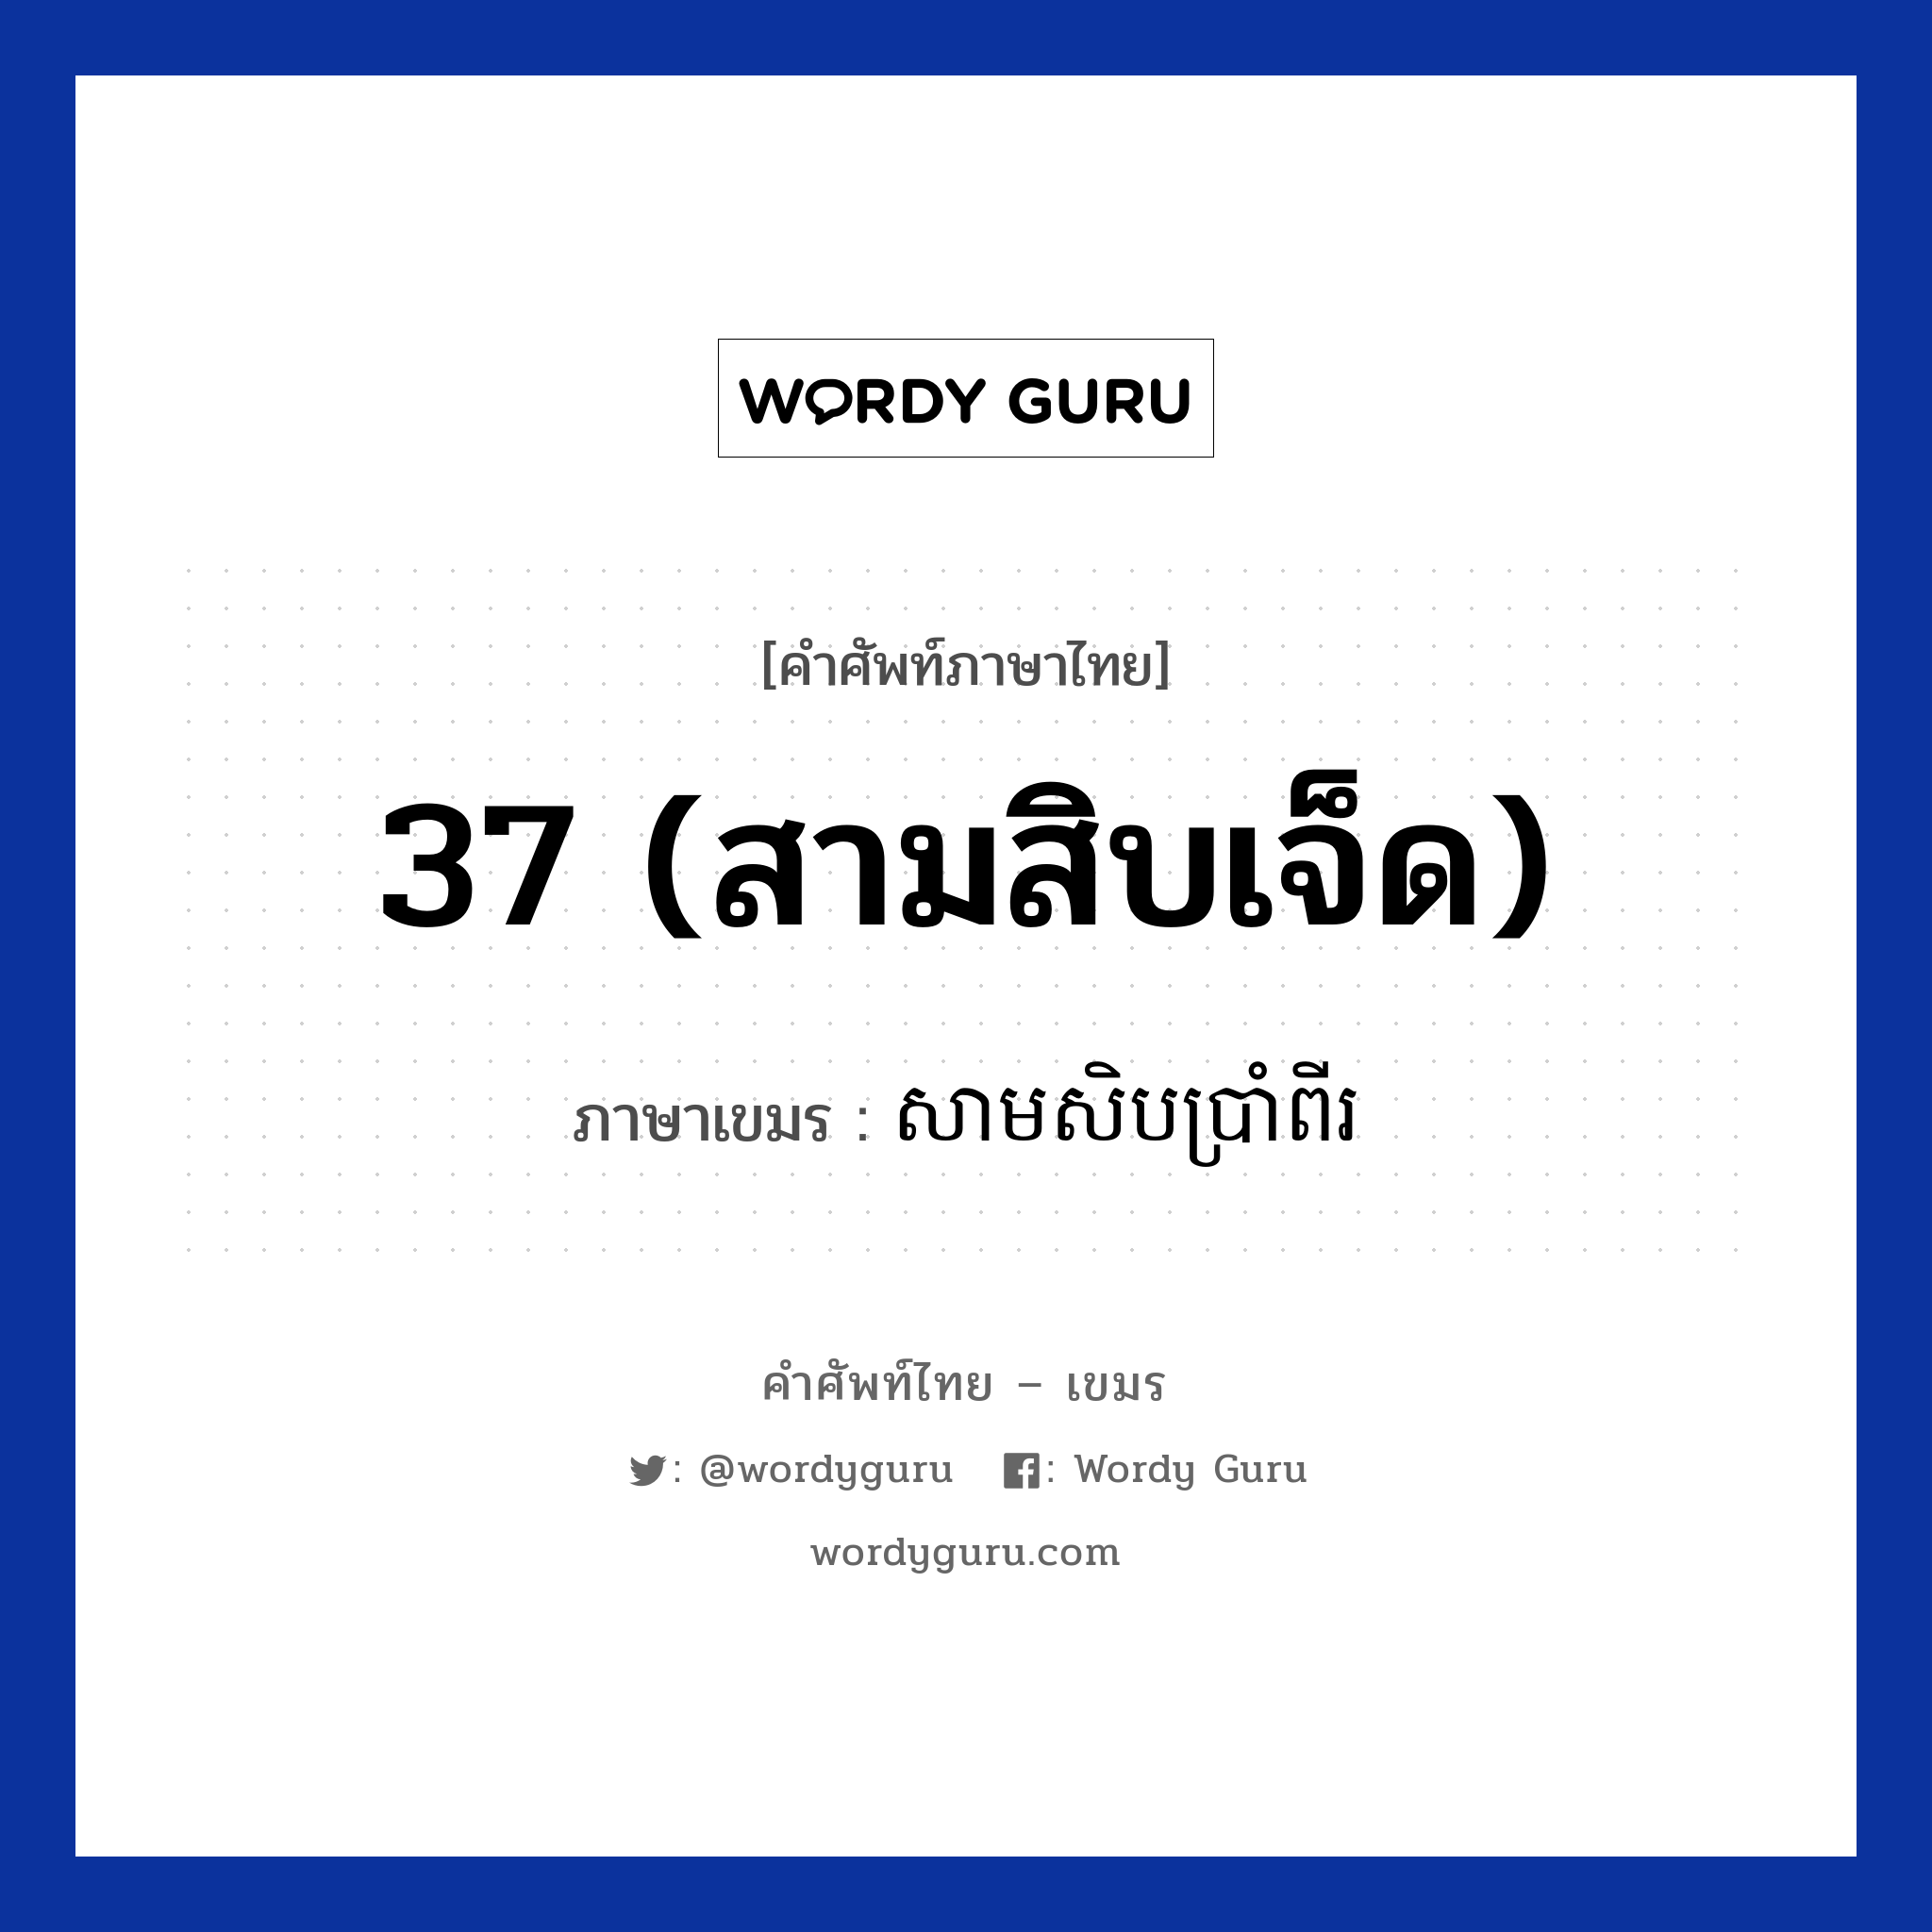 37 (สามสิบเจ็ด) ภาษาเขมรคืออะไร, คำศัพท์ภาษาไทย - เขมร 37 (สามสิบเจ็ด) ภาษาเขมร សាមសិបប្រាំពីរ หมวด การนับเลข Samsibbrampii หมวด การนับเลข